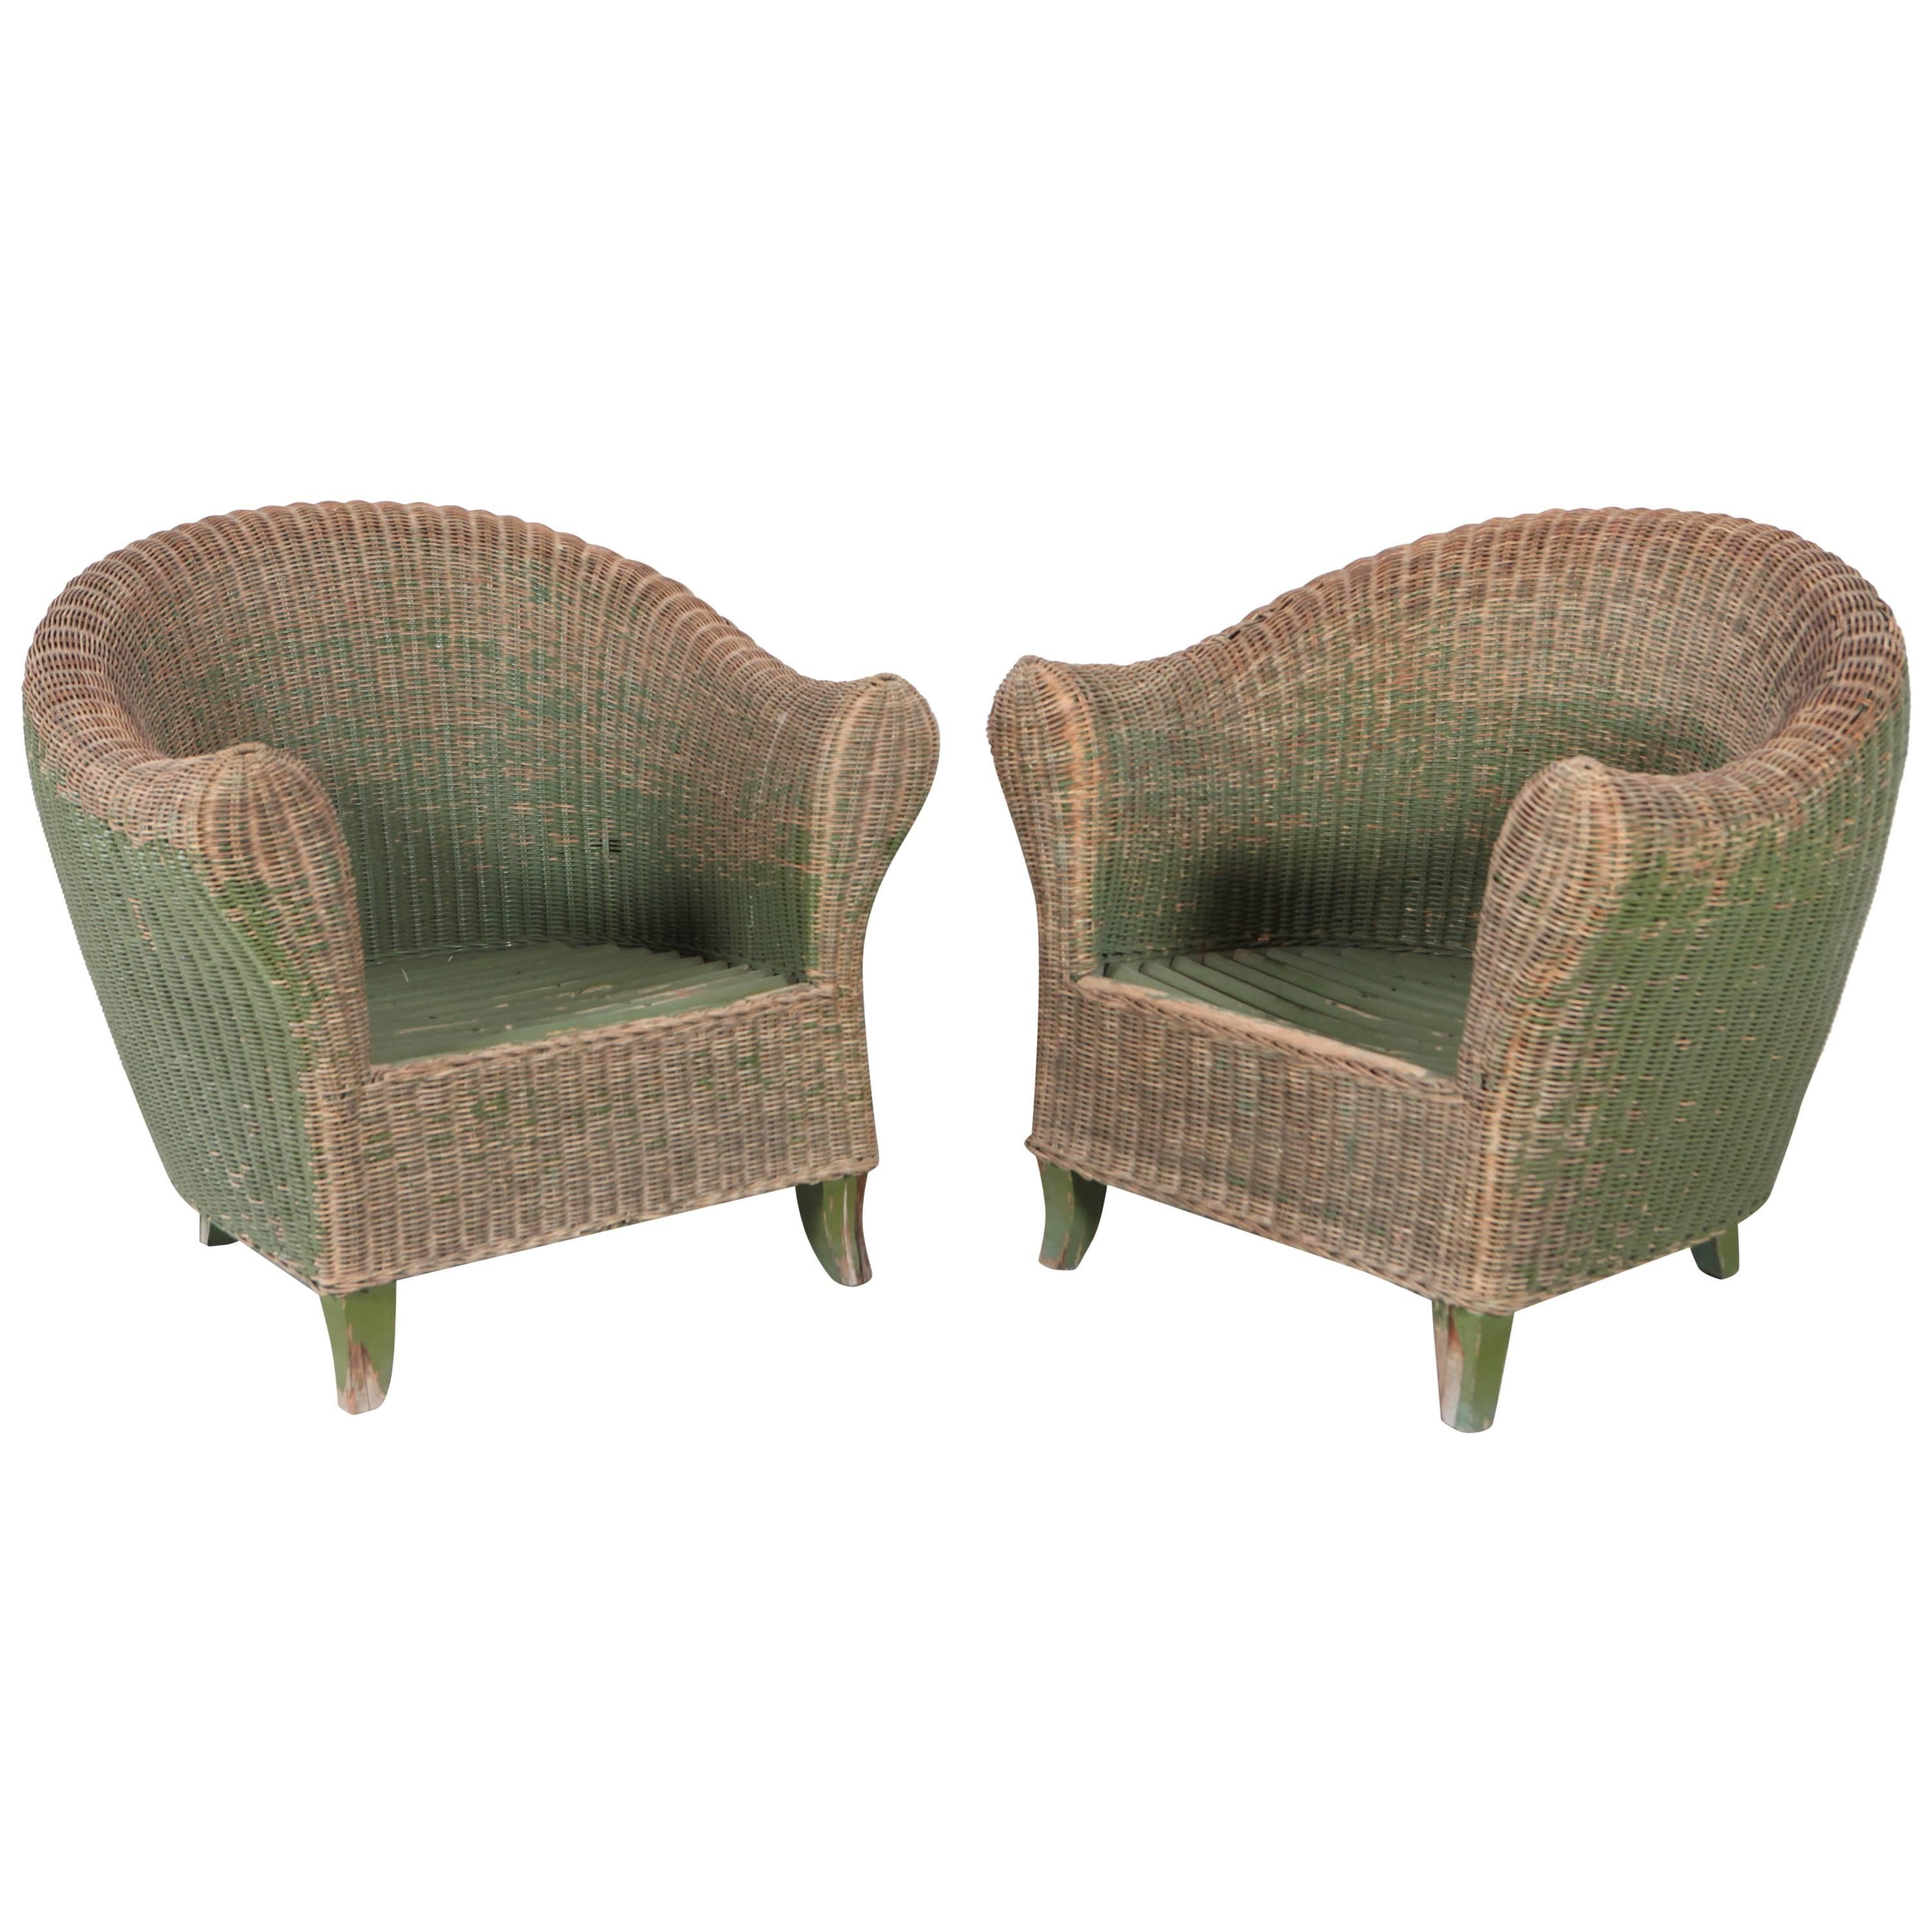 Pair of Italian Wicker Green Outdoor Garden Chairs